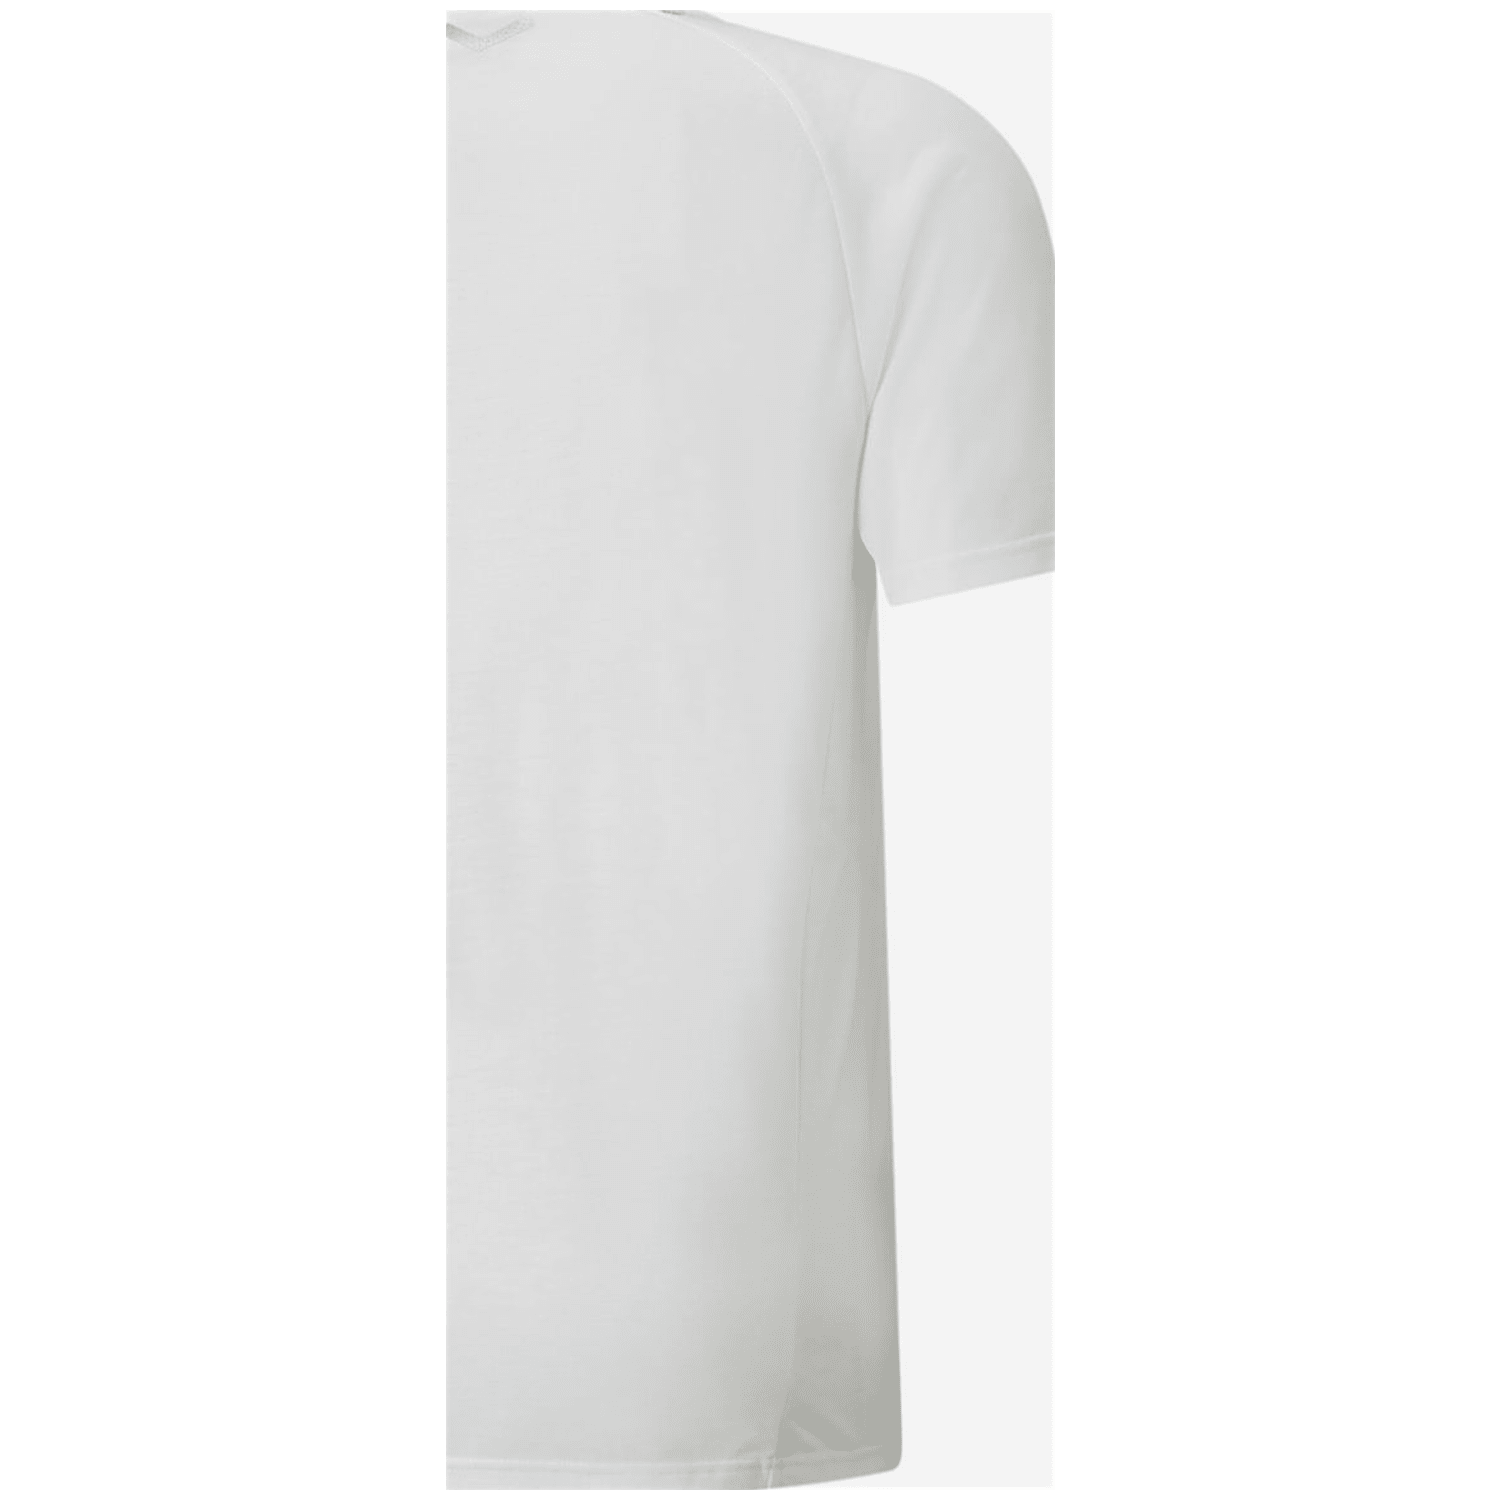 Puma TeamFINAL Casuals Tee Herren T-Shirt